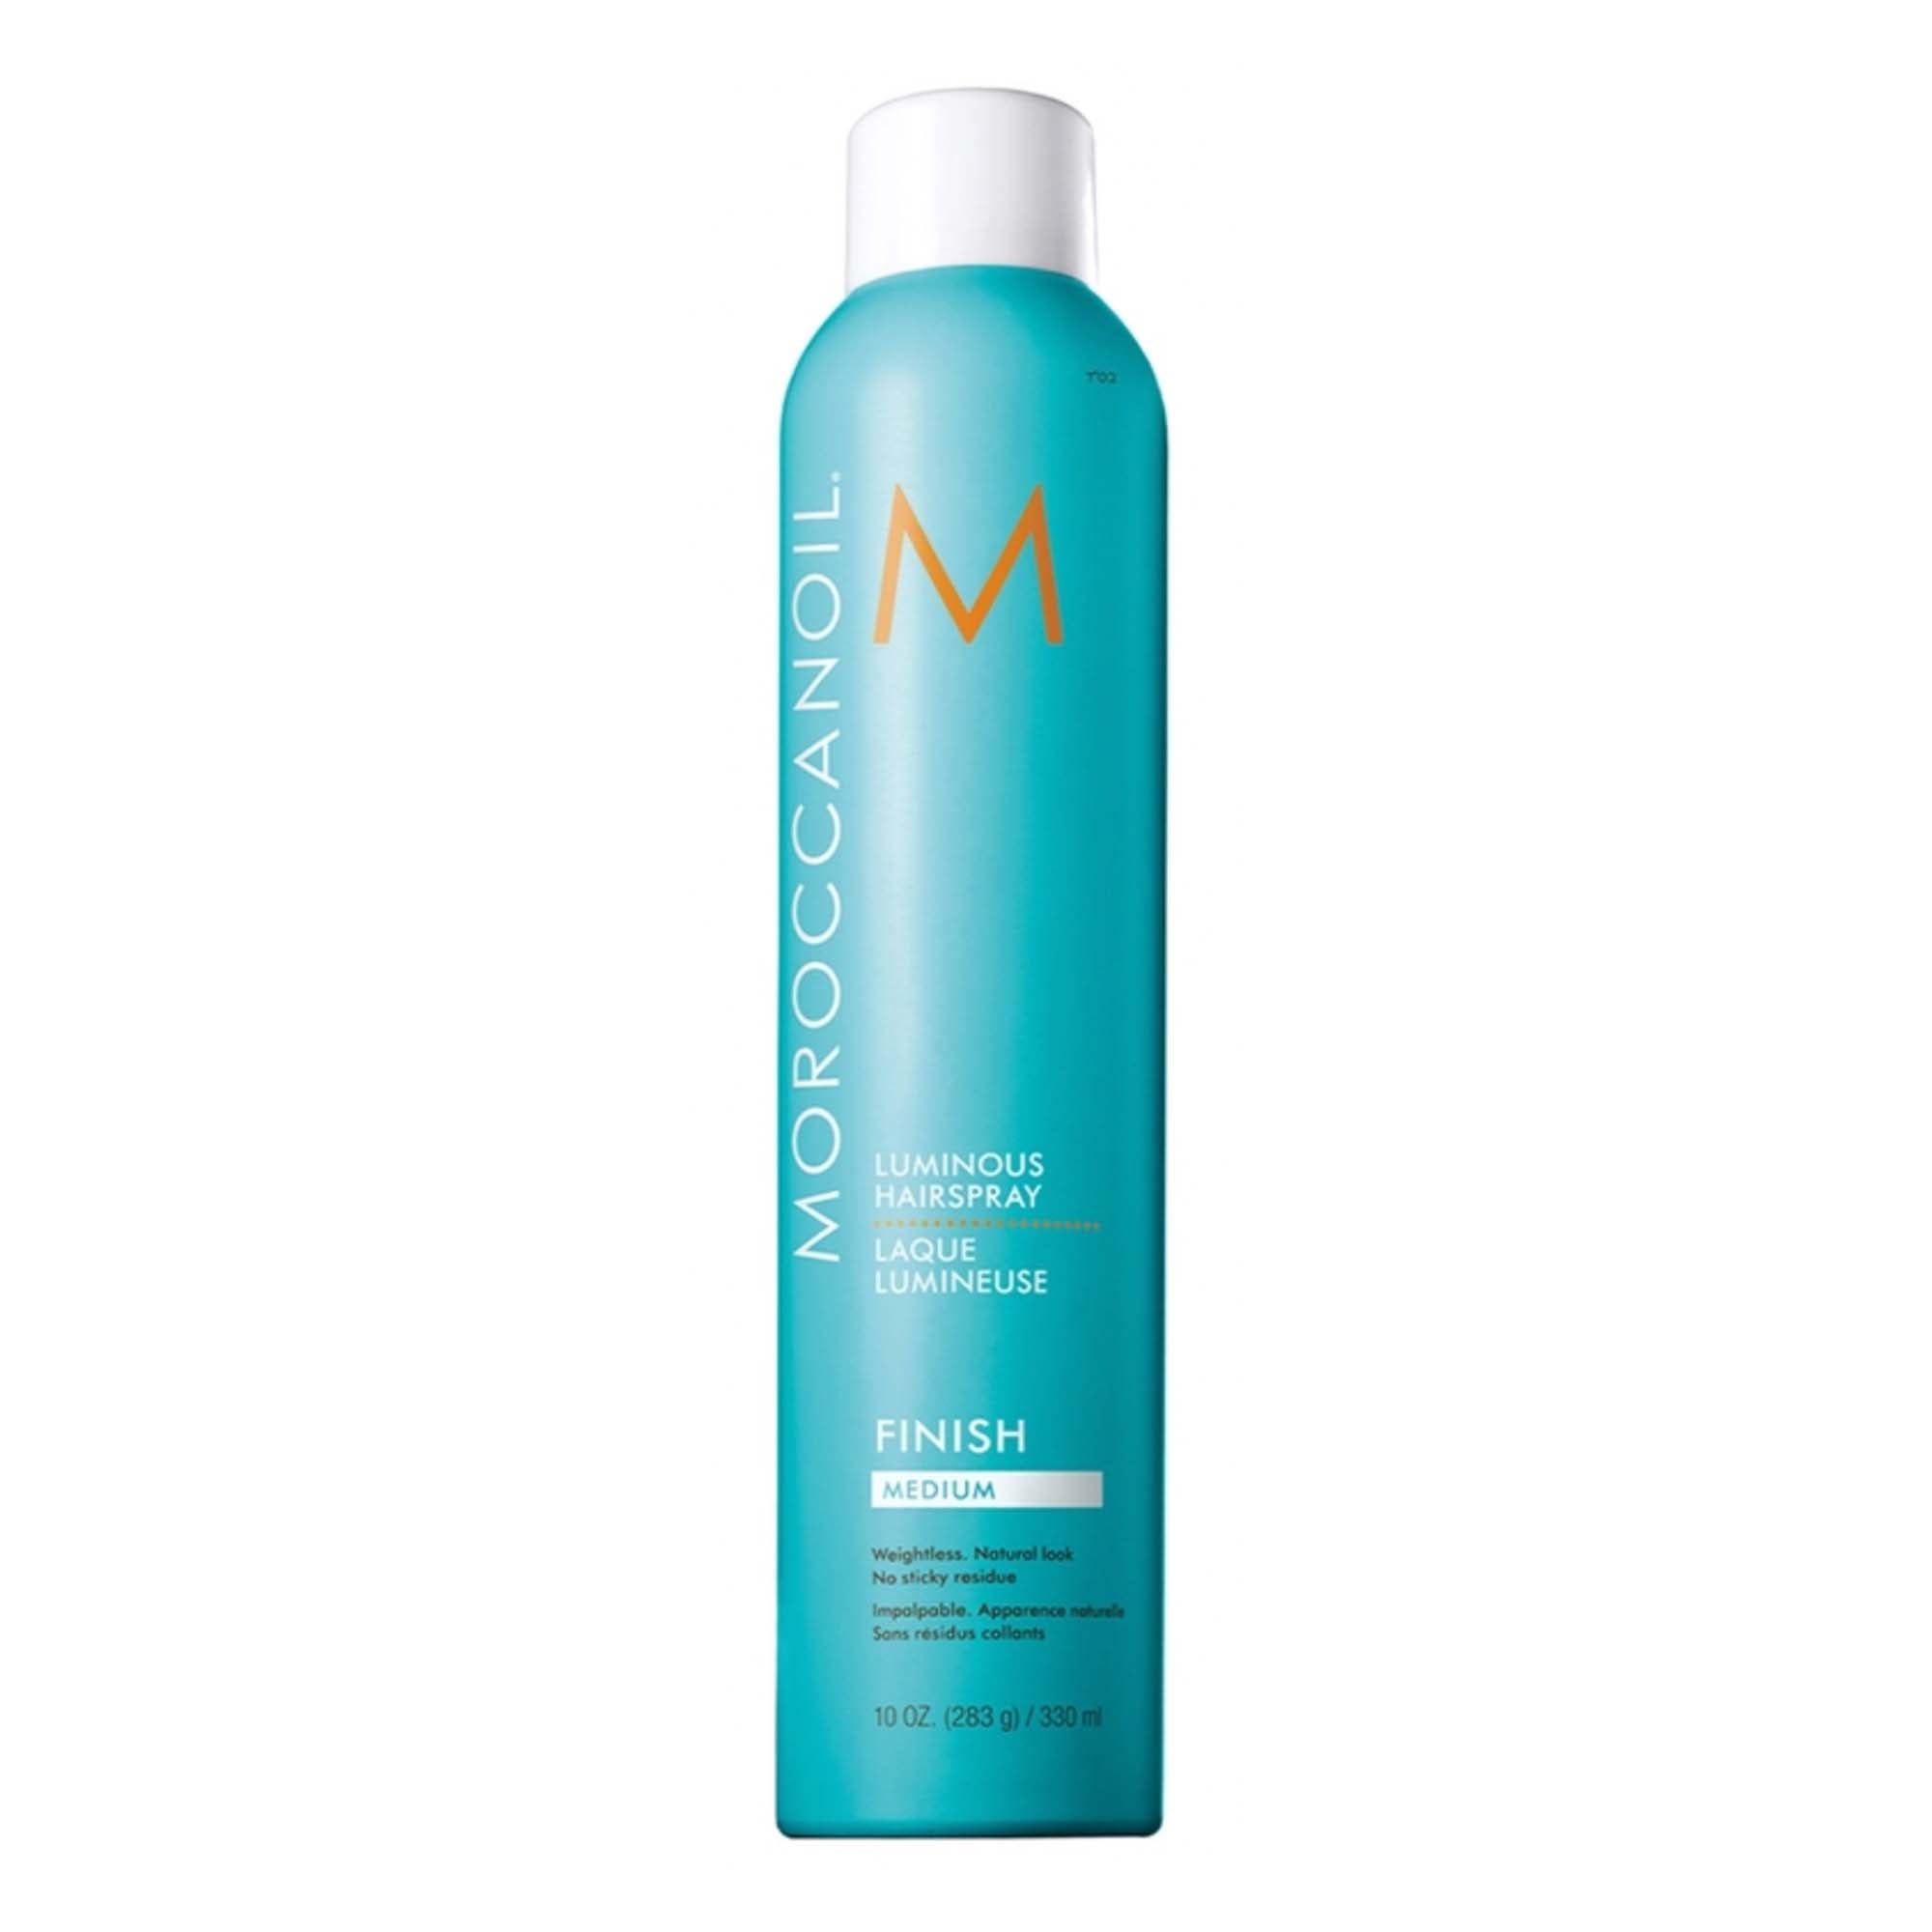 Morrocanoil Luminous Hairspray Finish Medium